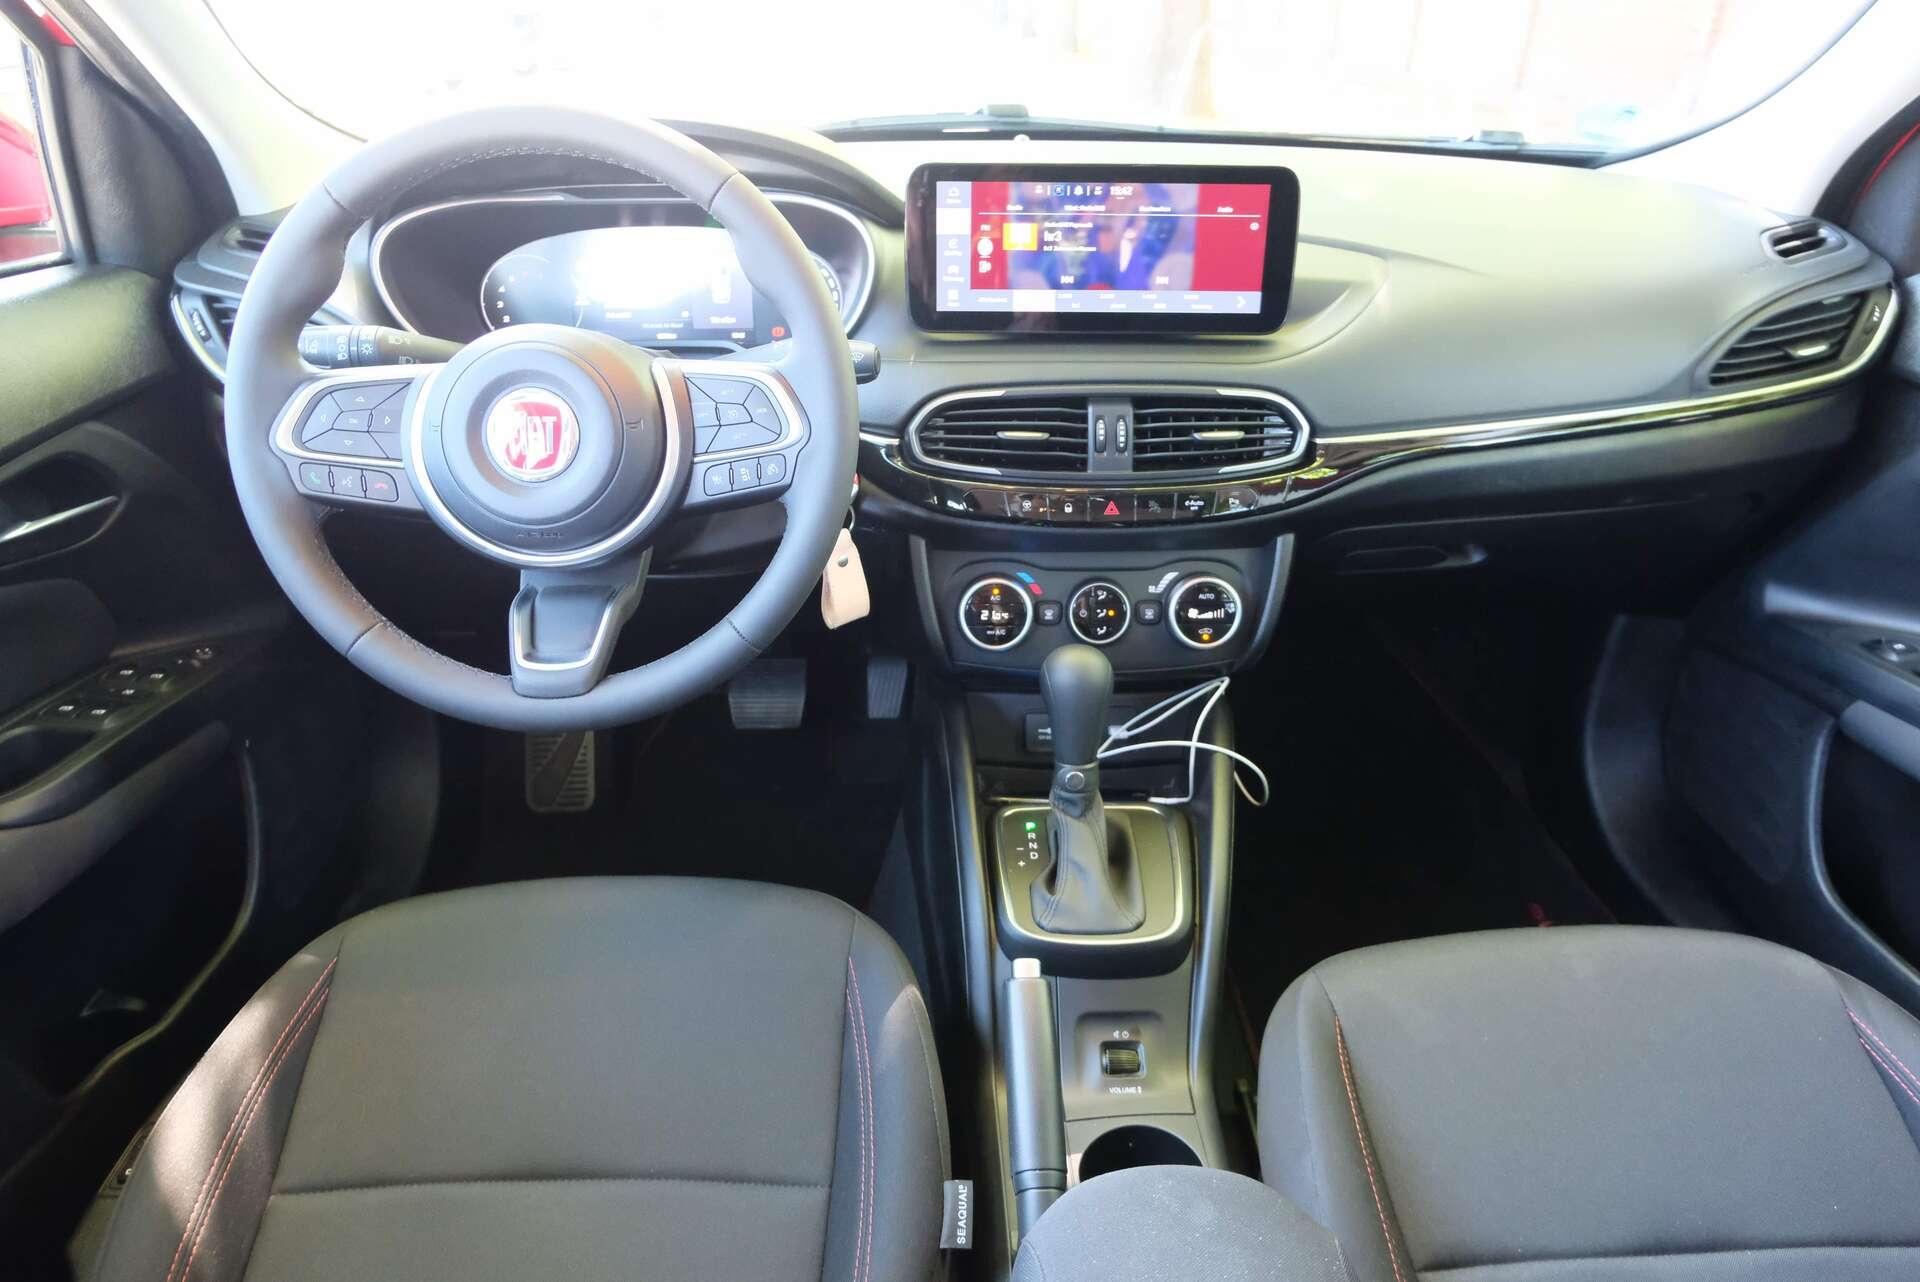 Fiat Tipo geht mit erweiterter Serienausstattung ins Jahr 2019